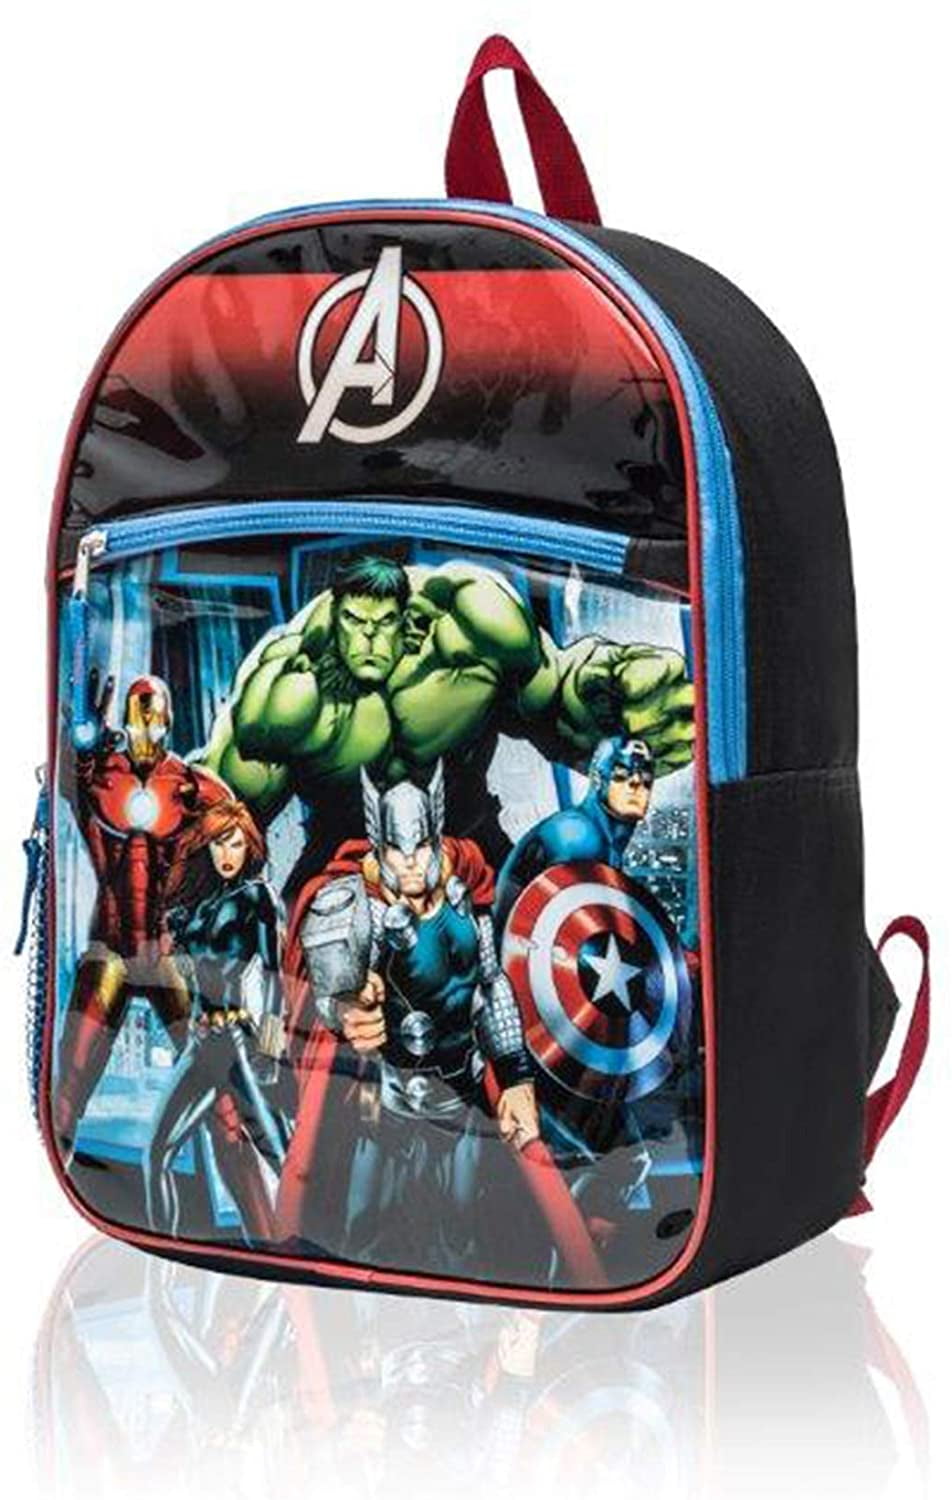 Marvel Avengers Boys Backpack Kids Character School Lunch Bag Bookbag Rucksack 